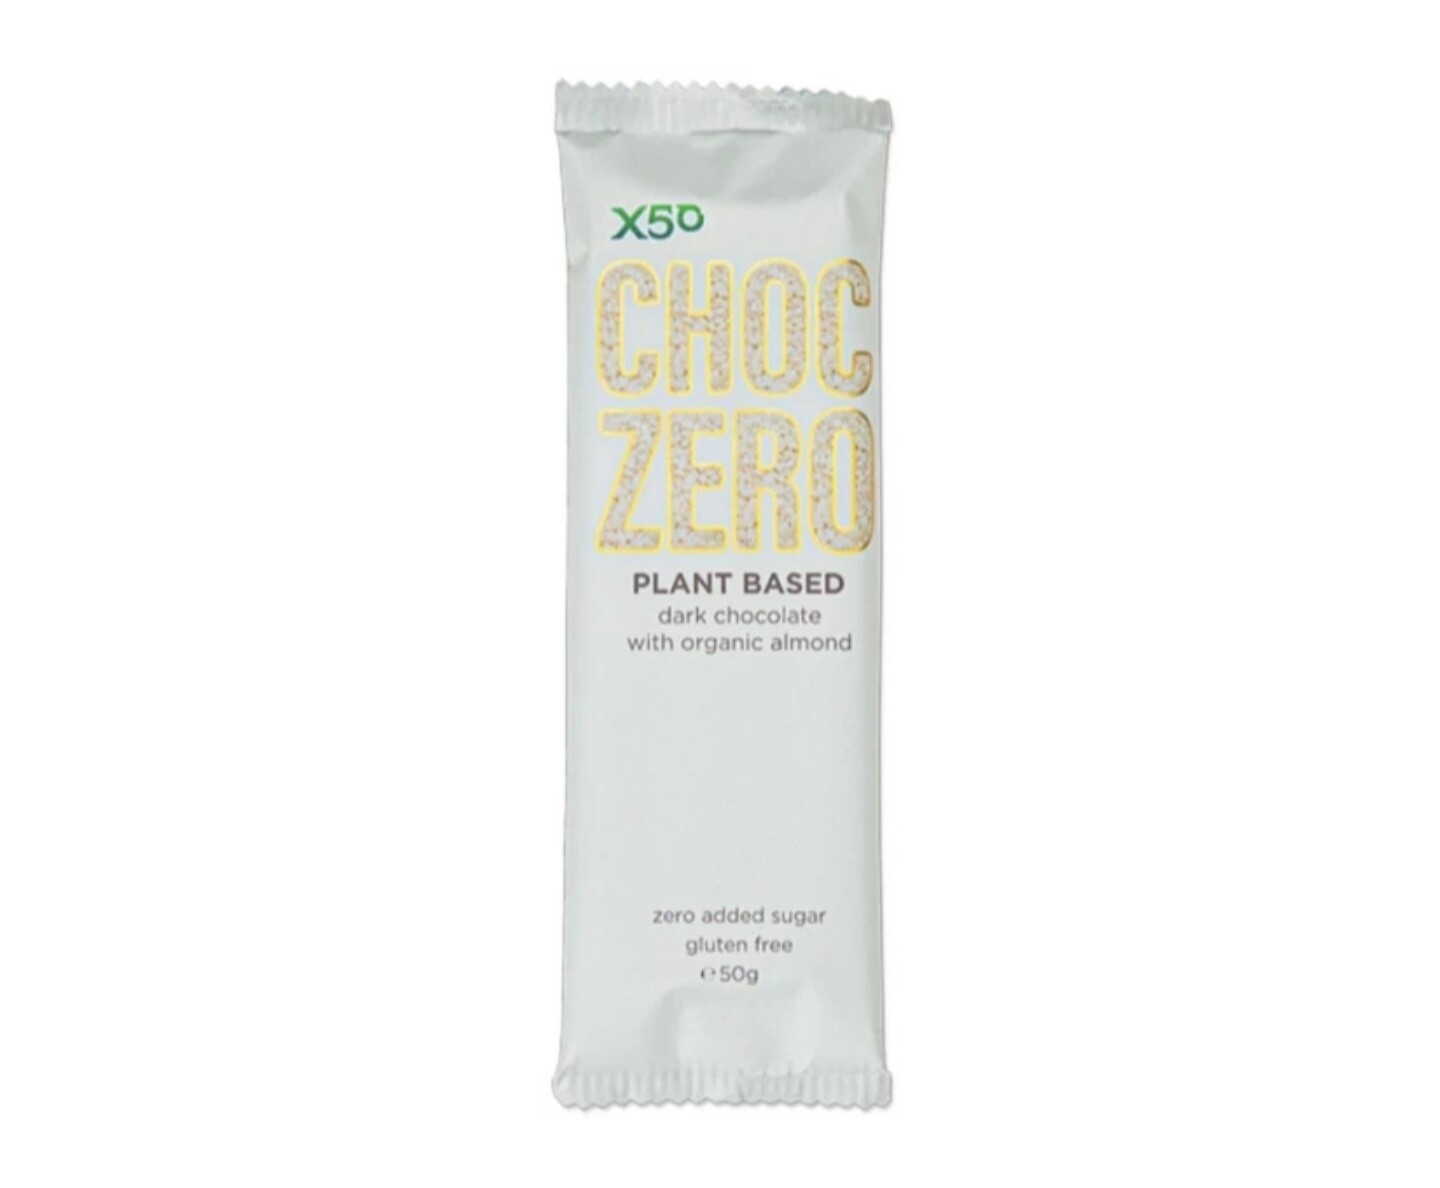 X50 Choc Zero Dark Chocolate with Organic Almond 50g